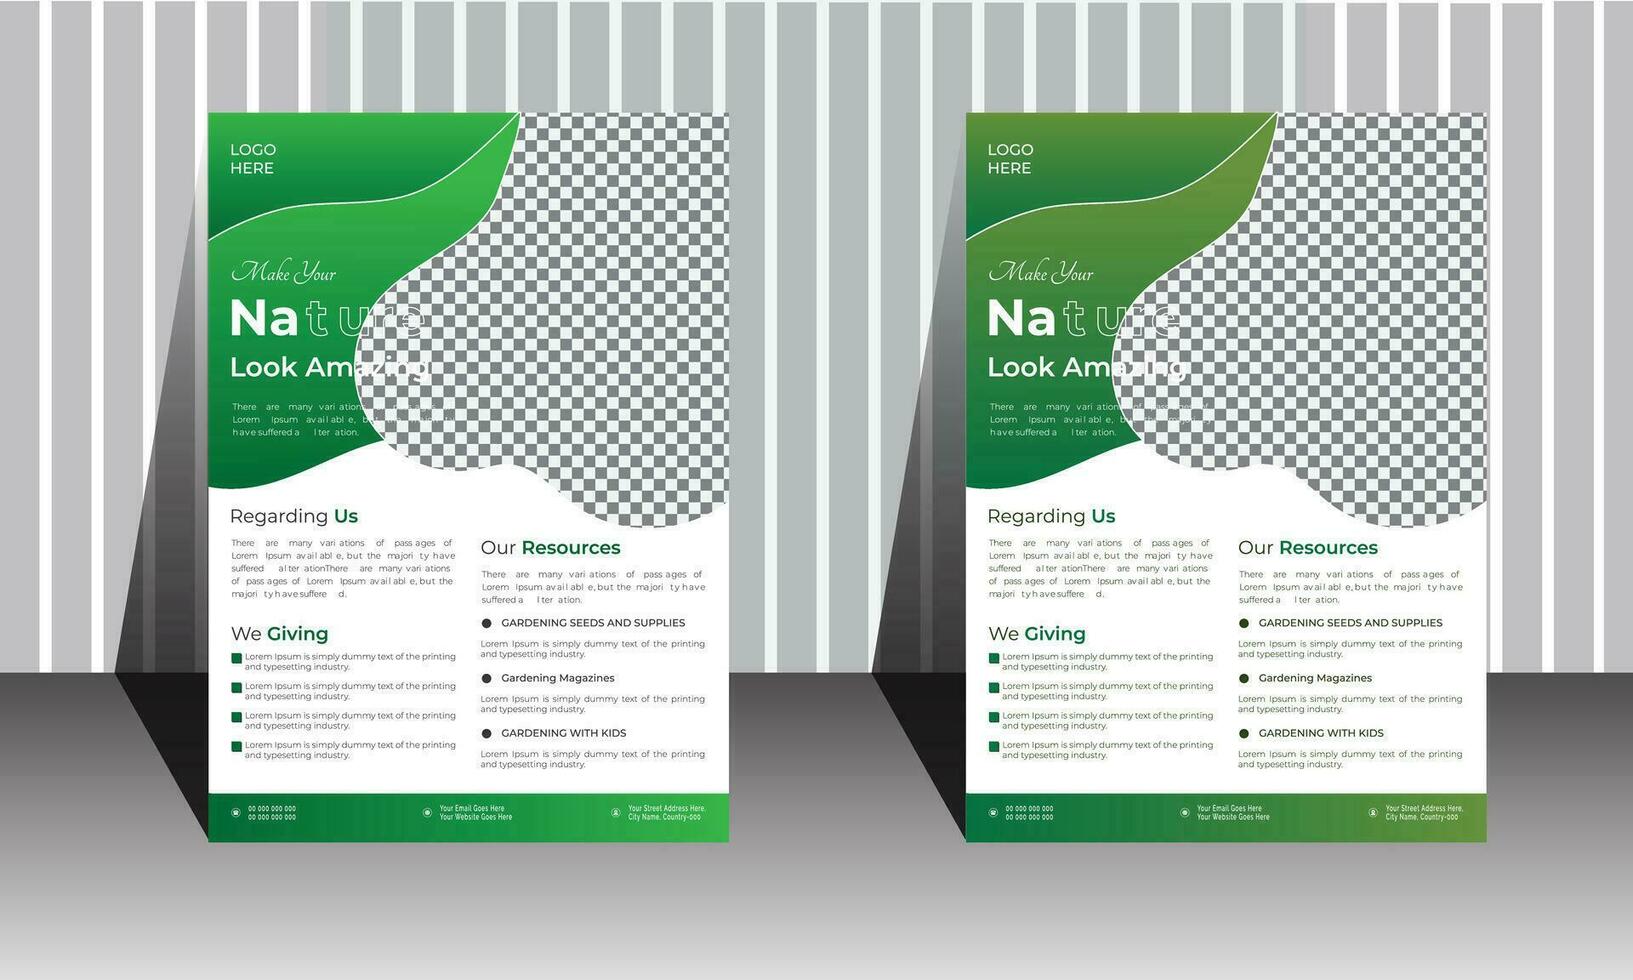 einfach Natur Flyer Design zum Marketing, Fachmann Startseite Design Layout Hintergrund, Poster Flyer Broschüre, a4 Größe bunt Vektor Design, 2 Farbe Flugblatt.